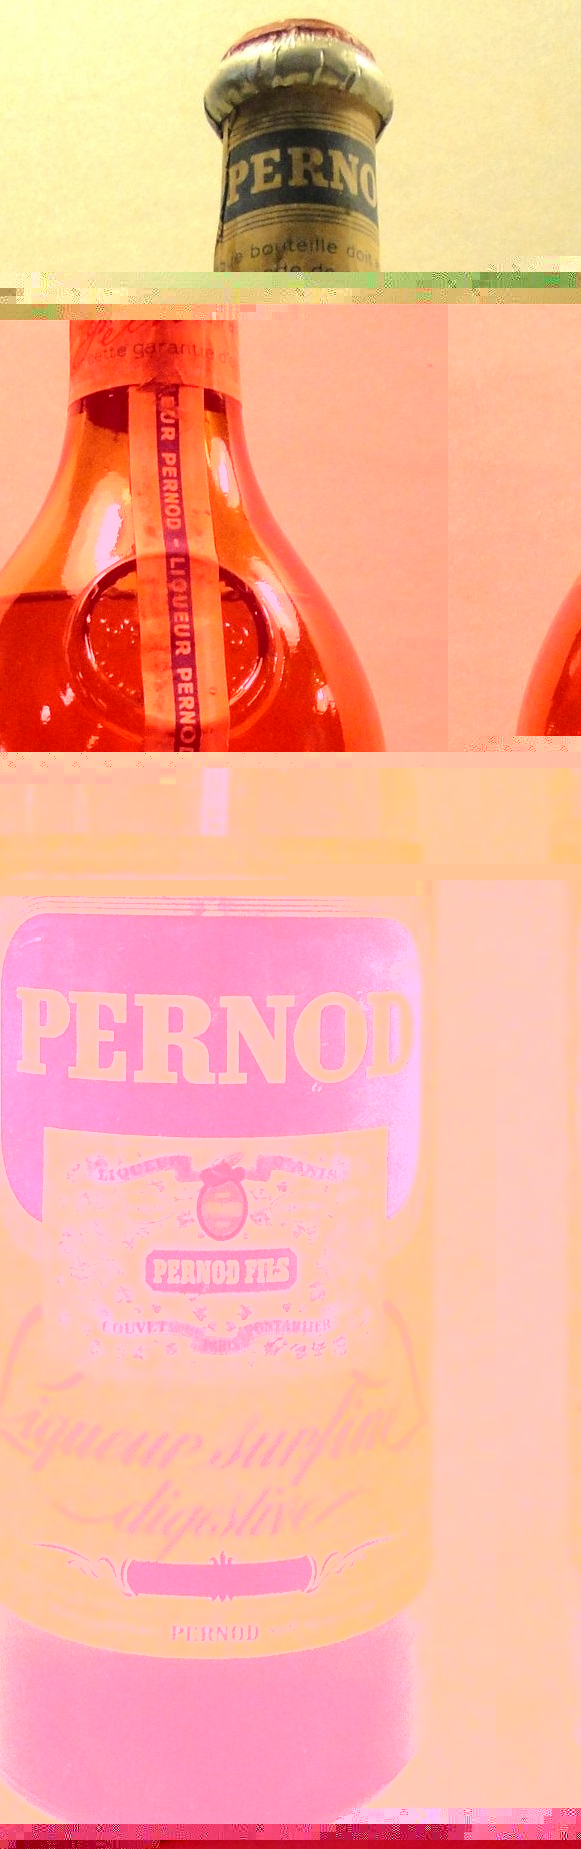 Pernod Fils Liquiur d'Anis